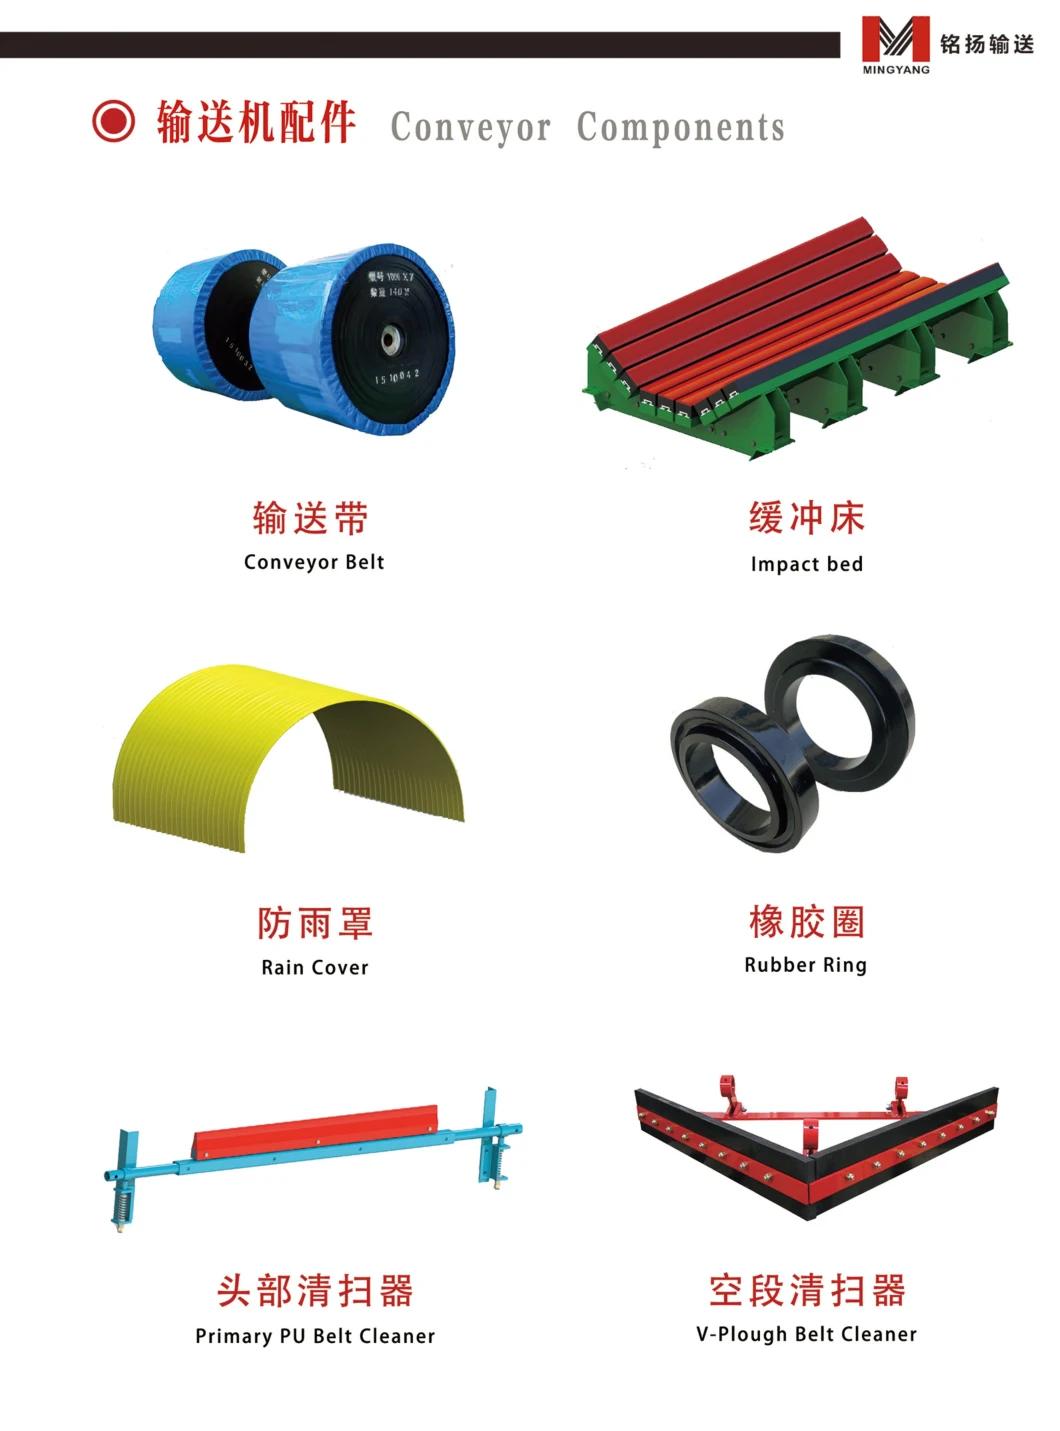 Belt Conveyor System Primary Belt Cleaner for Mining